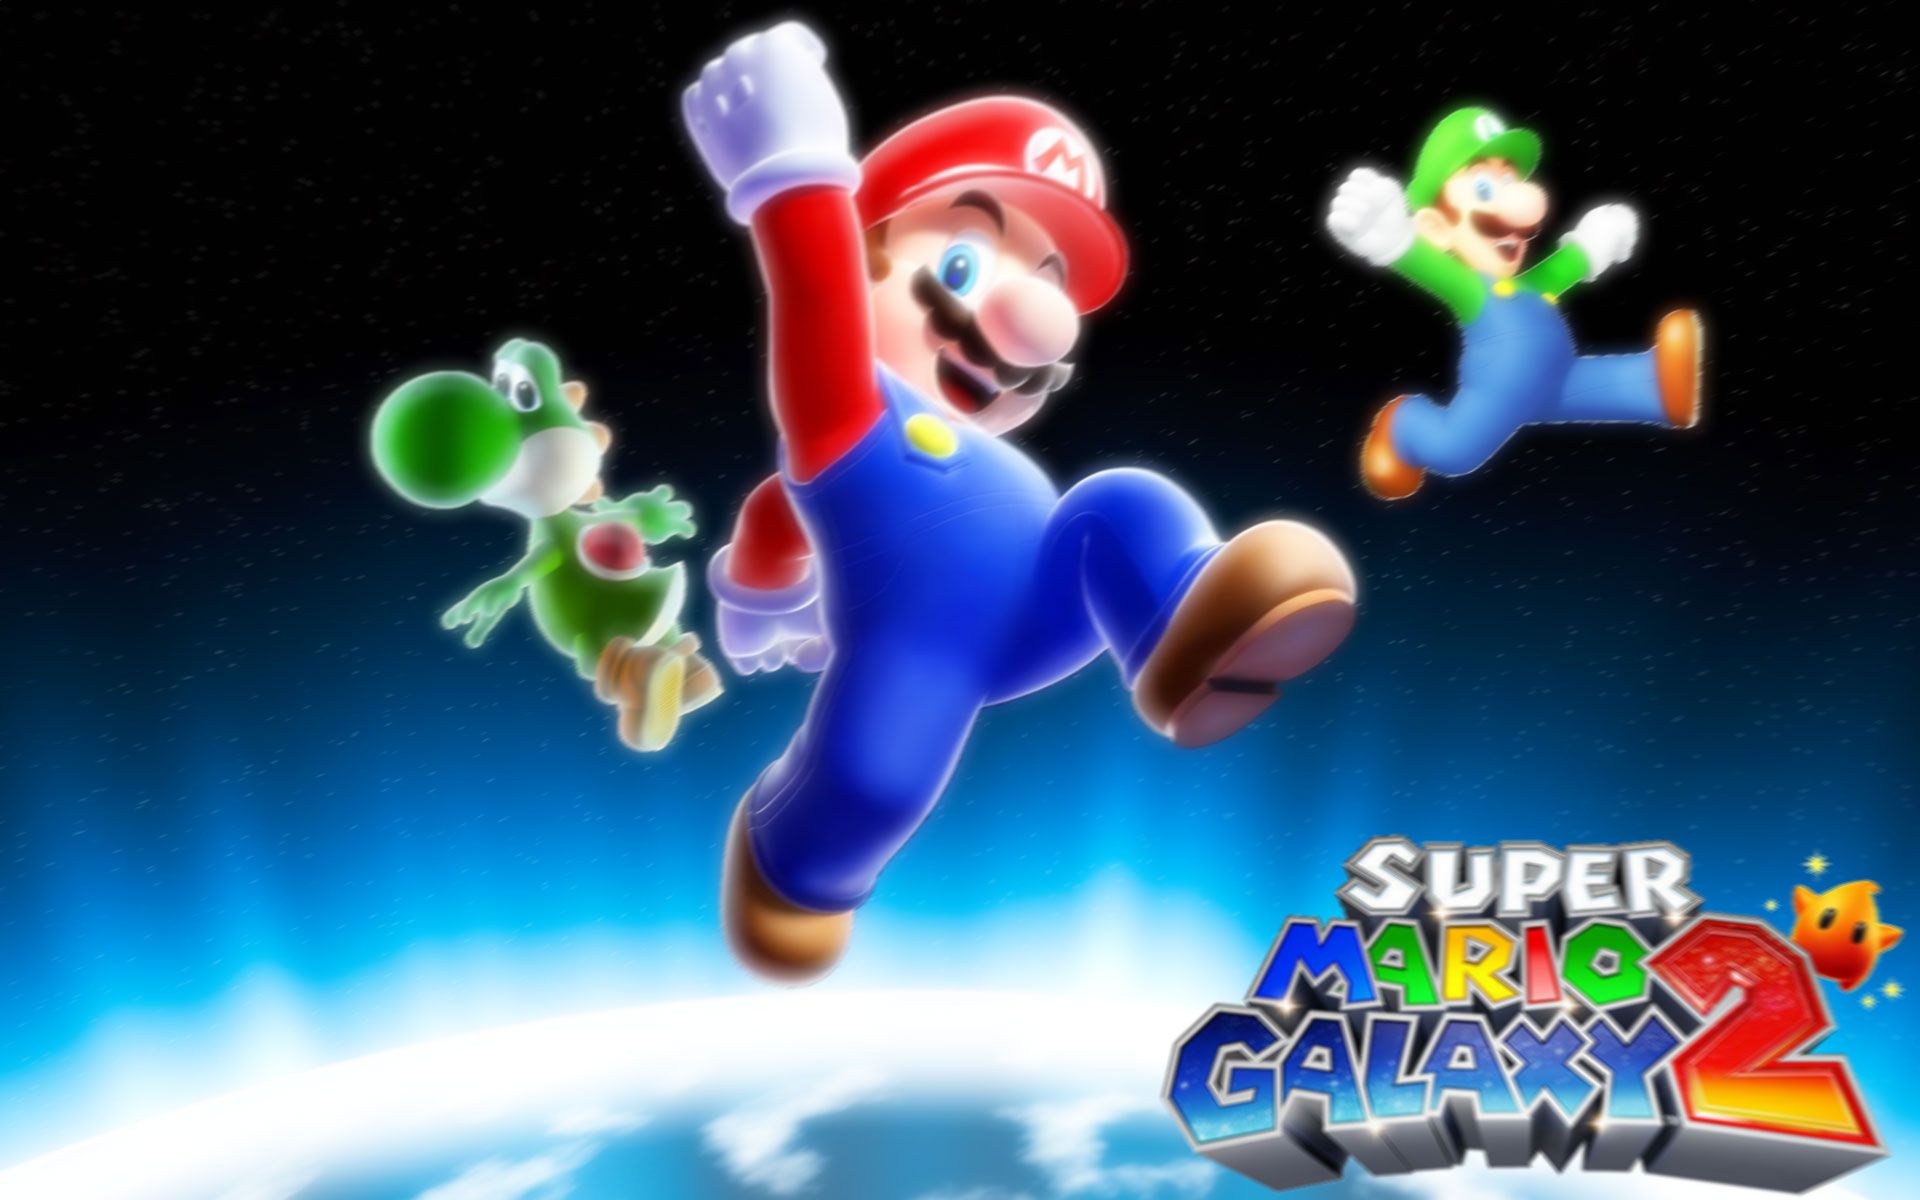 Super Mario Galaxy Wallpaper HD